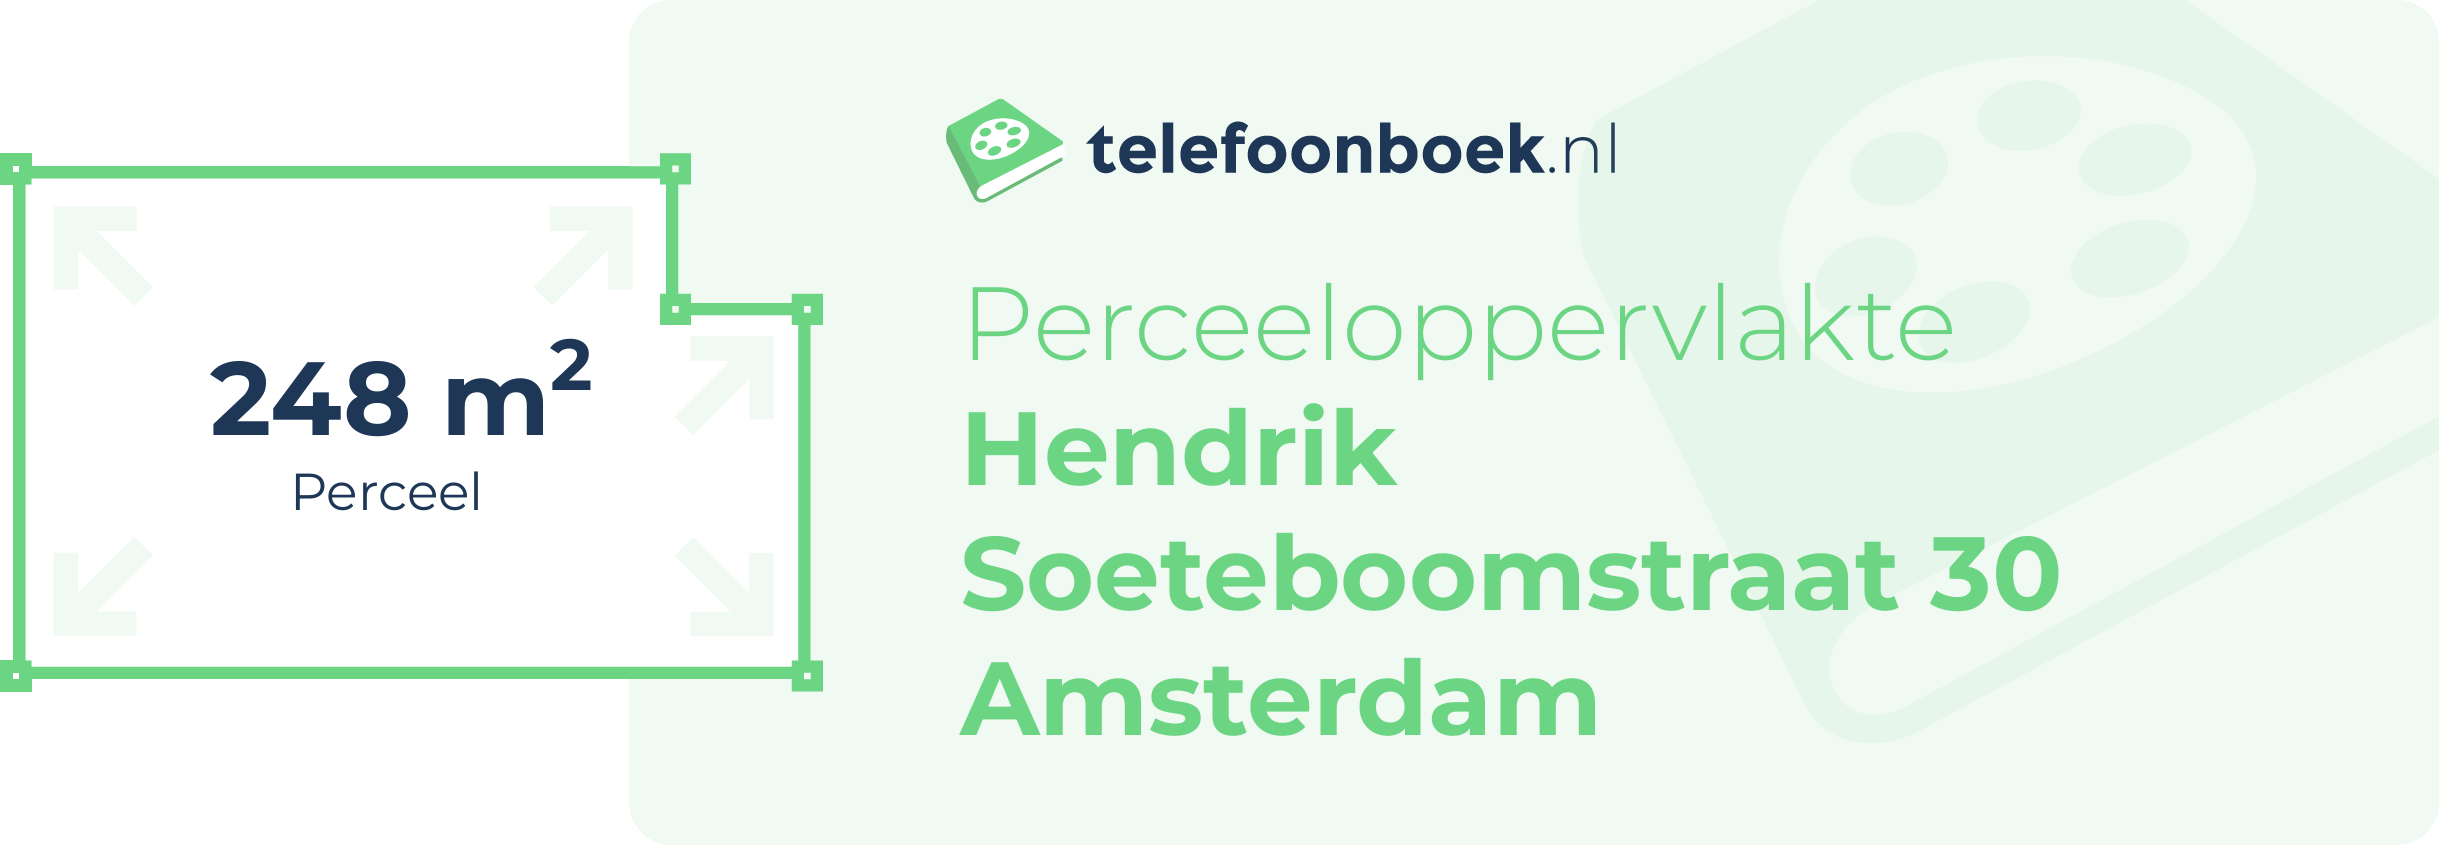 Perceeloppervlakte Hendrik Soeteboomstraat 30 Amsterdam